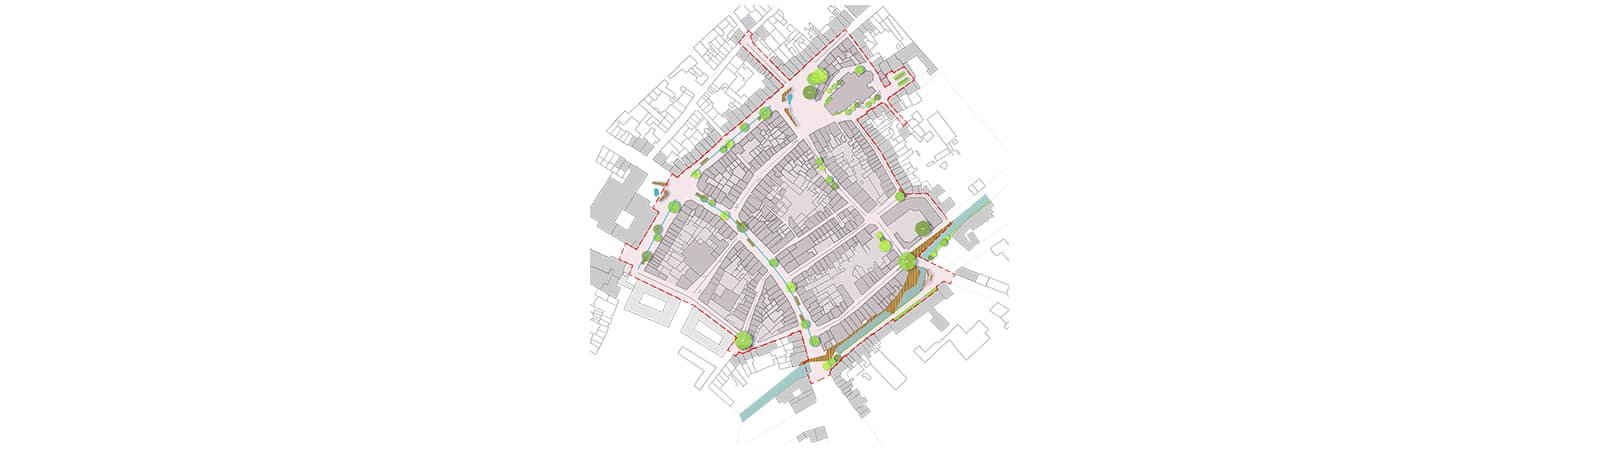 Plan masse - Embellissement du centre-ville